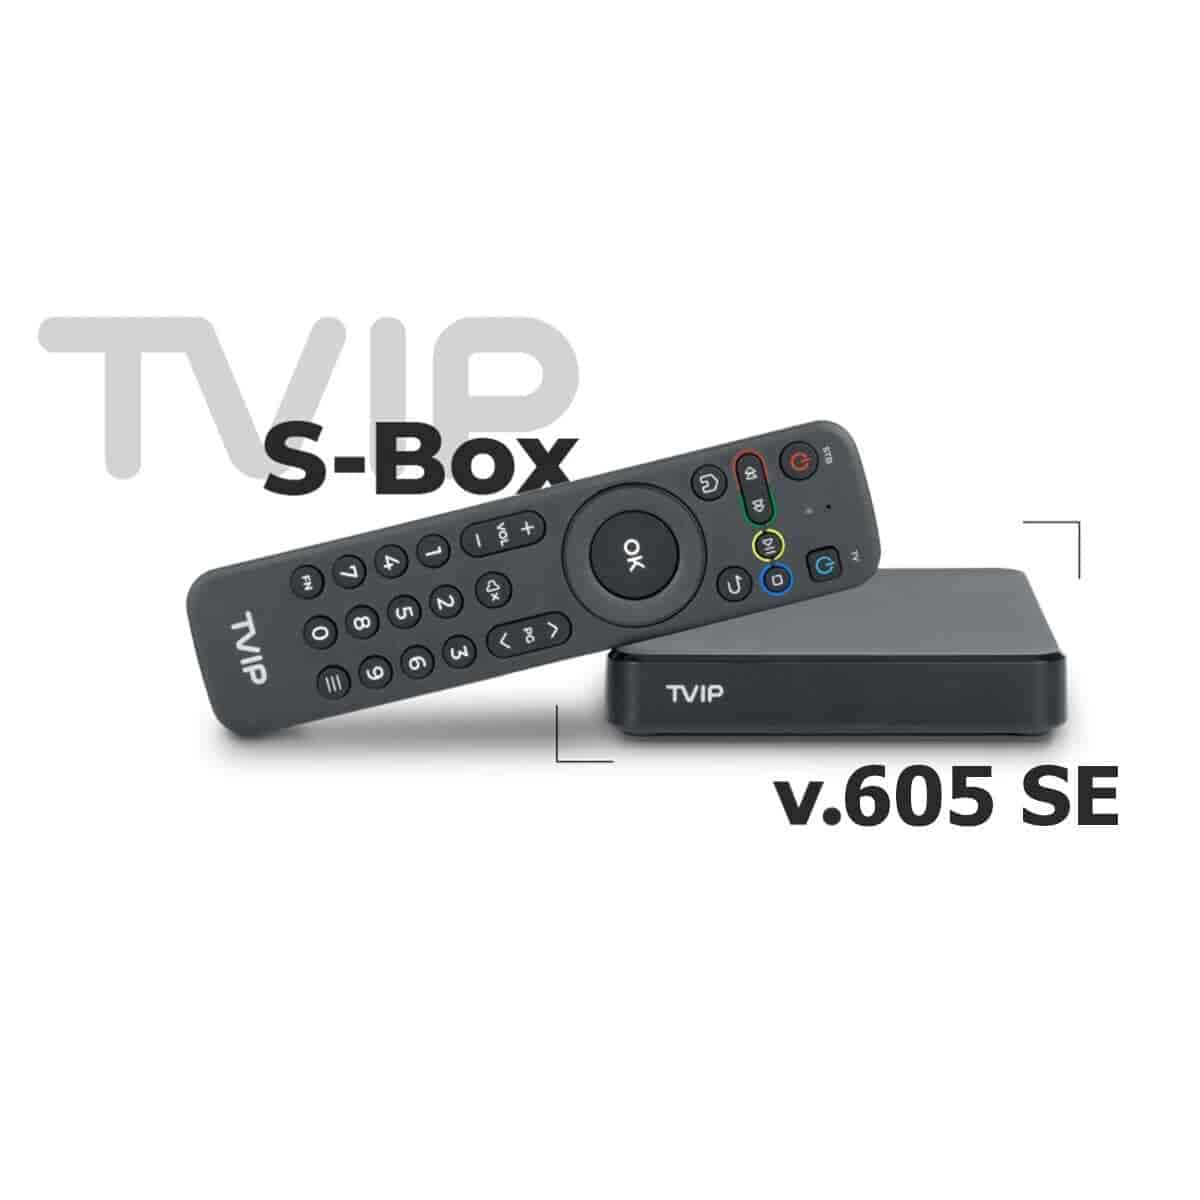 TVIP S-Box v.605 SE IPTV 4K HEVC HD Multimedia Stalker IPTV Stream boks